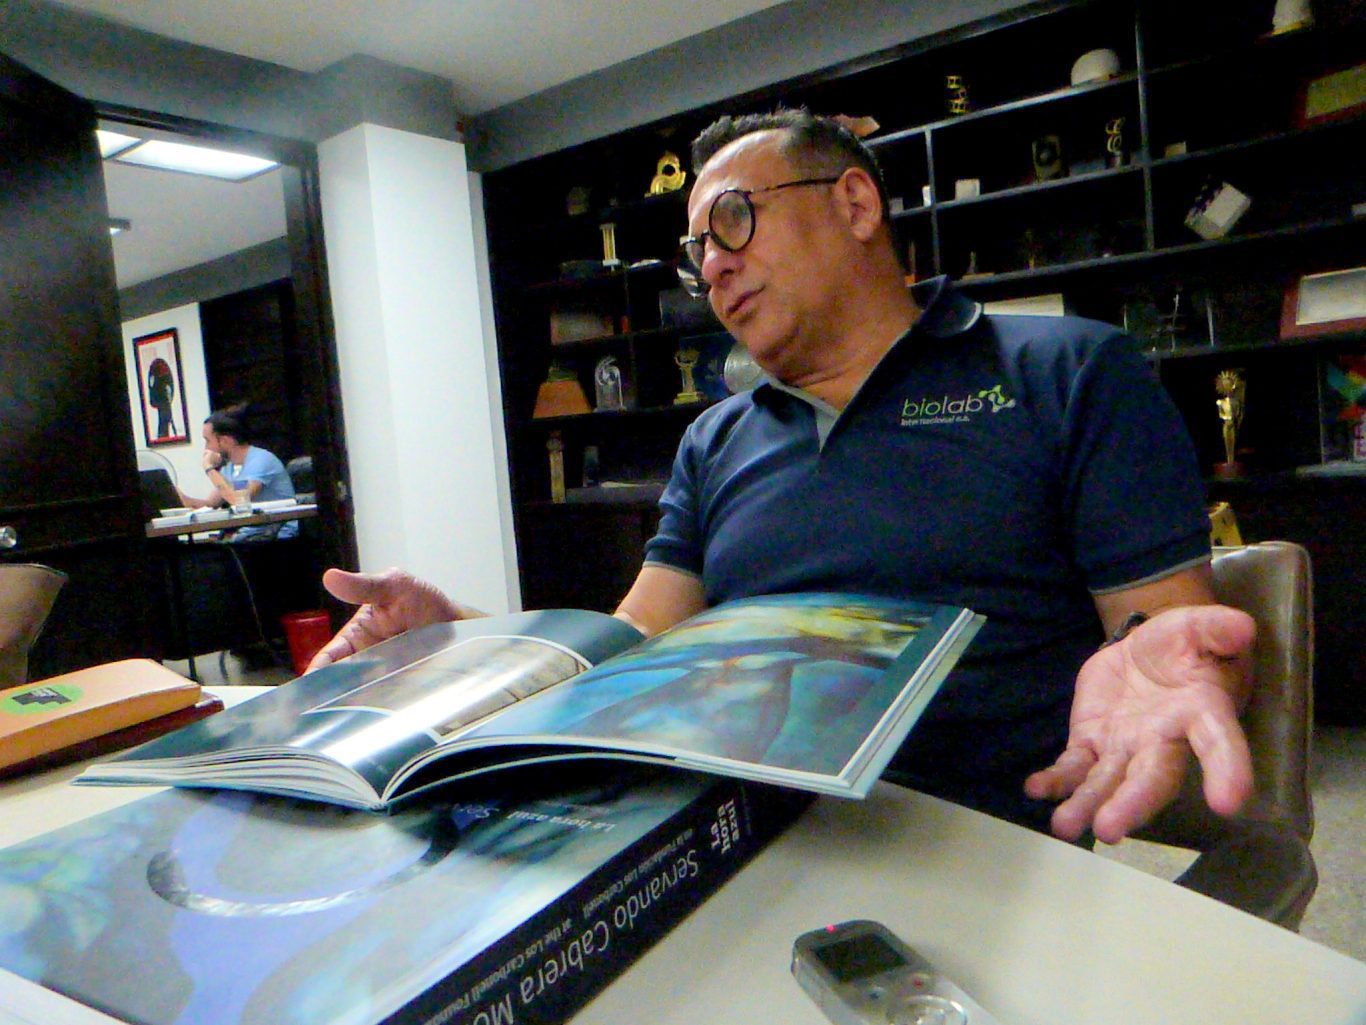 Dr. Carbonell con los ejemplares del catálogo de la exposición La memoria de los borrados y el libro "La Hora Azul, Servando Cabrera Moreno". Foto: Ángel Marqués Dolz.